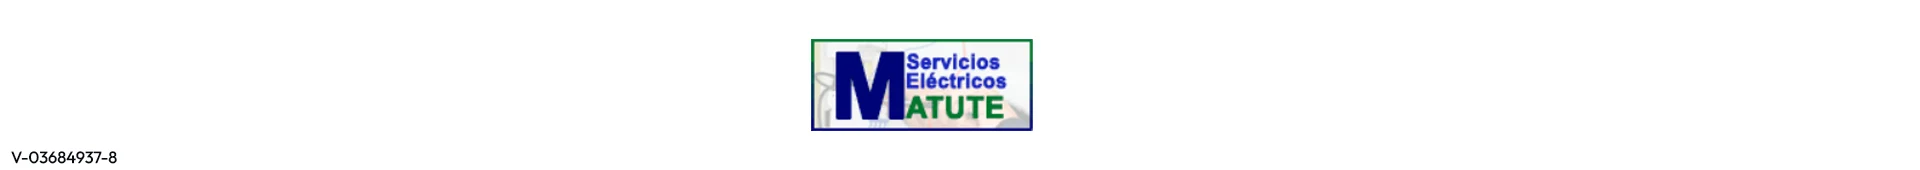 Imagen 1 del perfil de Servicios Eléctricos Matute